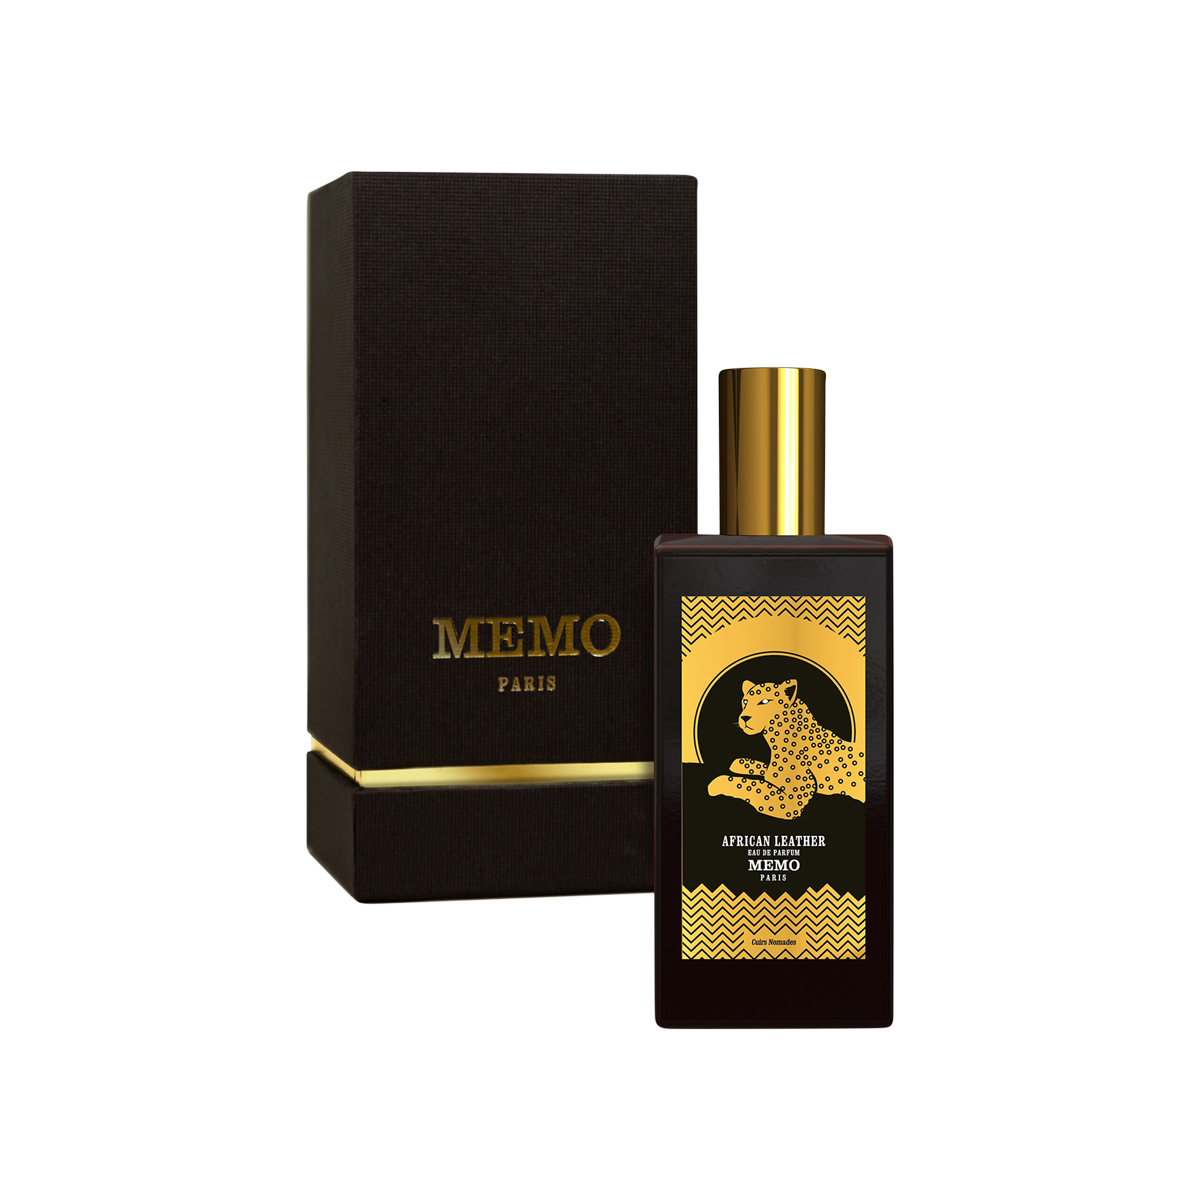 Memo Paris - African Leather Eau de Parfum